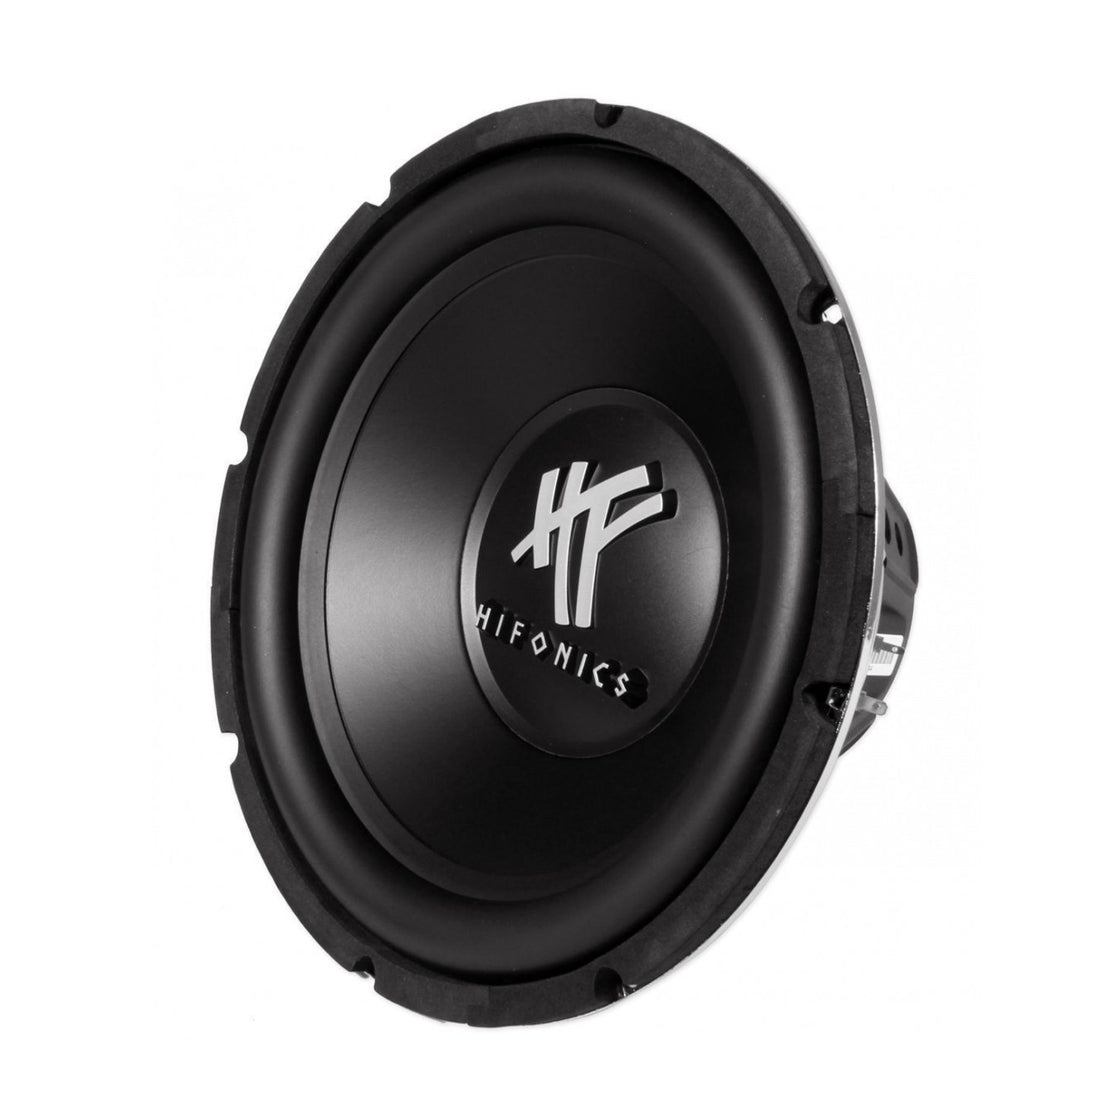 Hifonics HFX12D4 800 W Max 12" Dual 4-Ohm Voice Coil DVC Car Audio Subwoofer